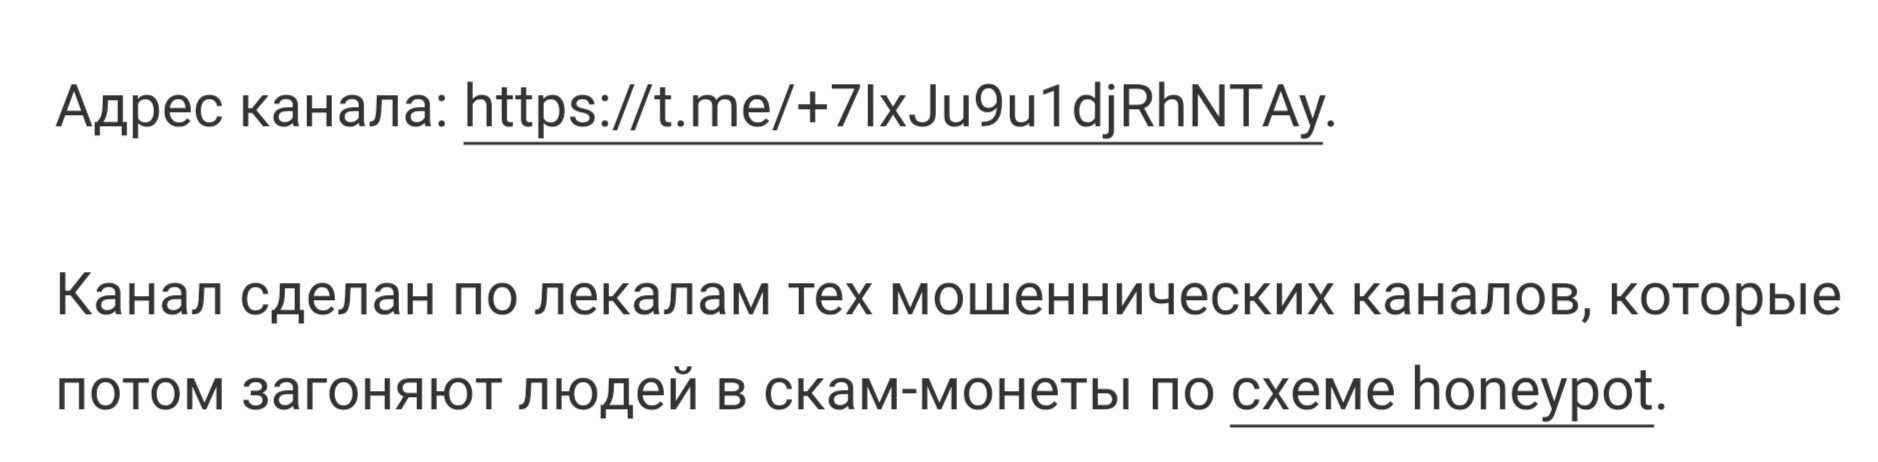 Отзывы о телеграм-канале Эллай Багровский